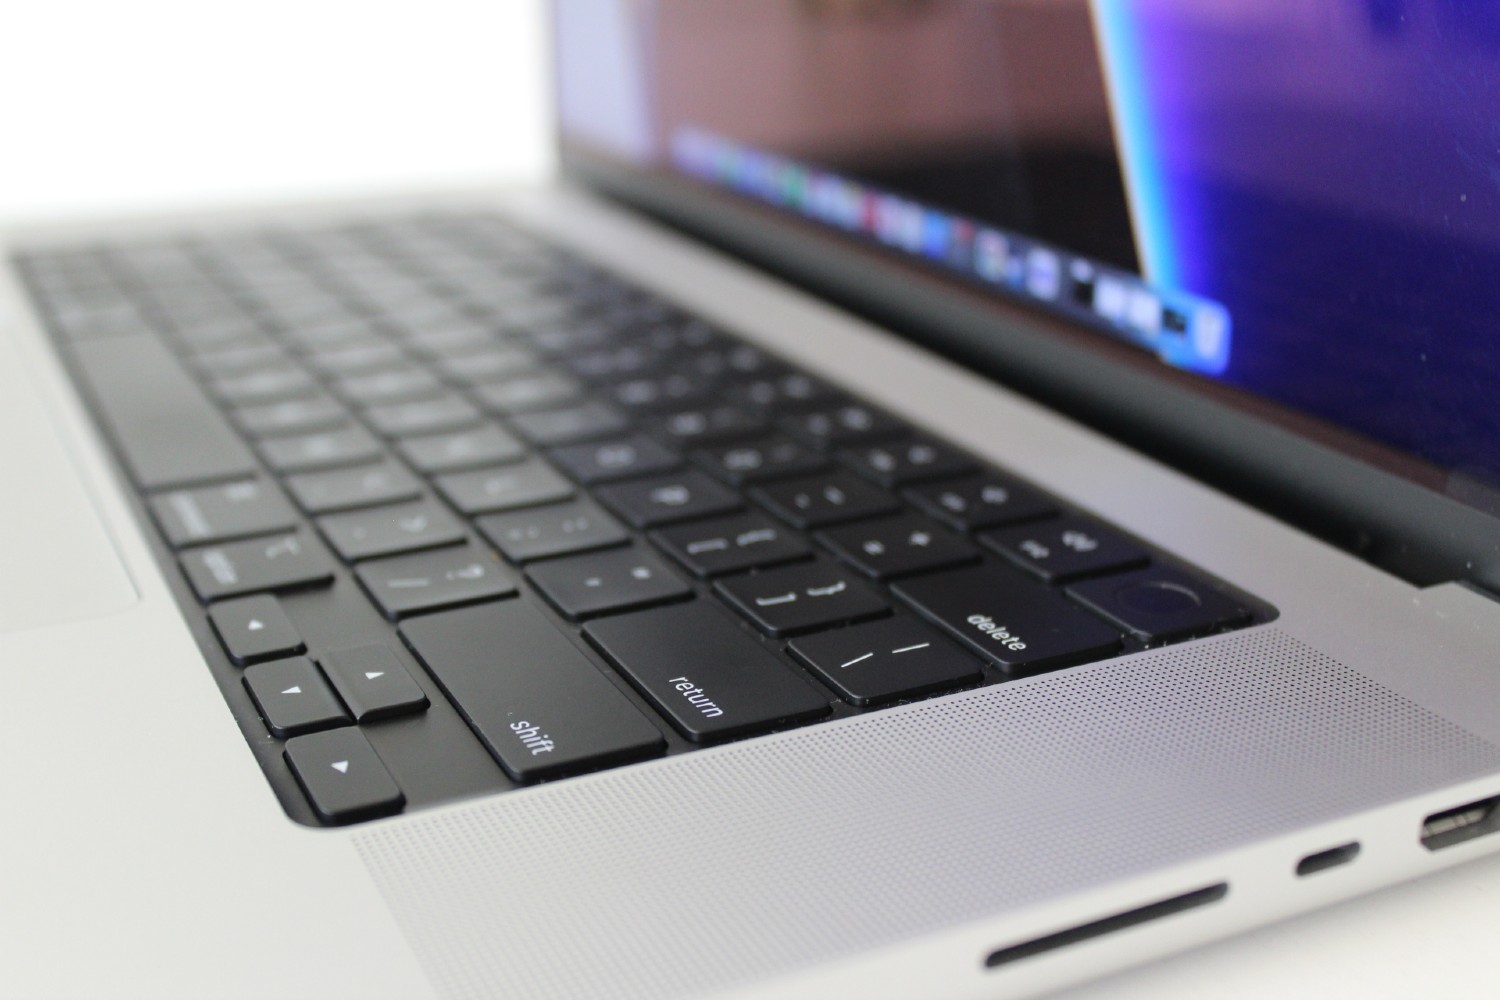 Vista lateral do Apple MacBook Pro 16 mostrando o teclado e as portas.